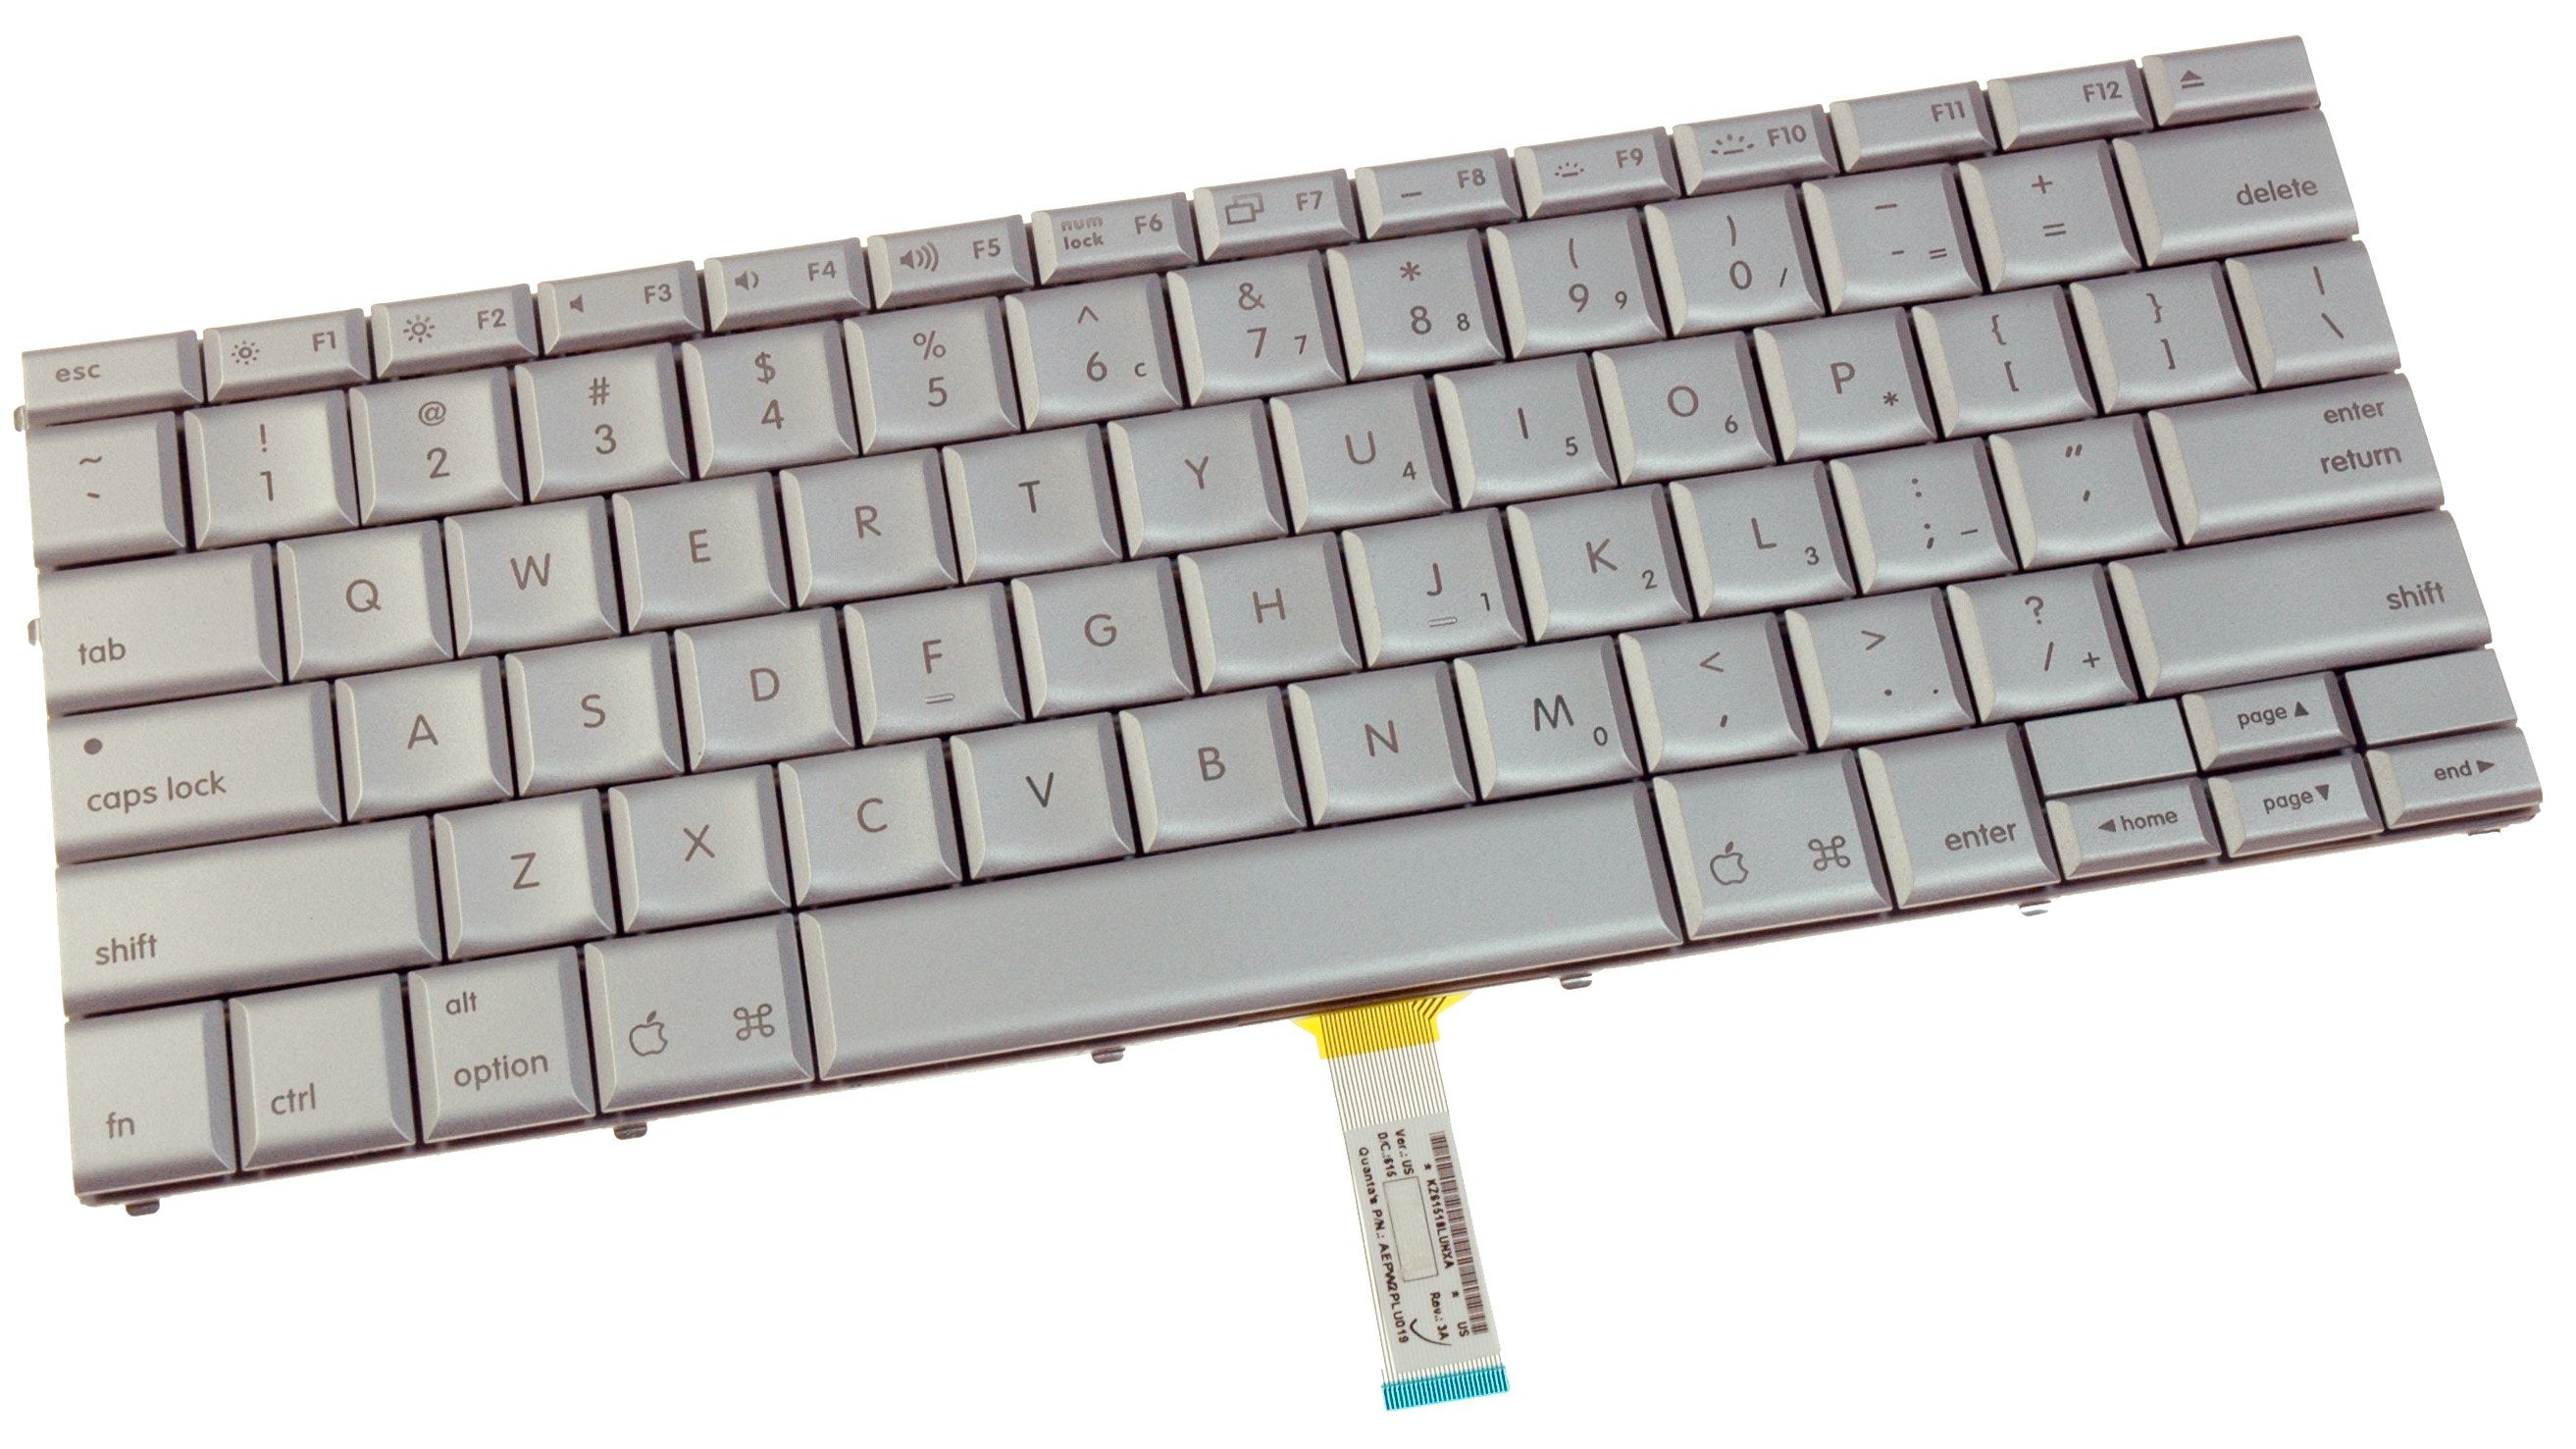 MacBook Pro 17" (Model A1151) Keyboard